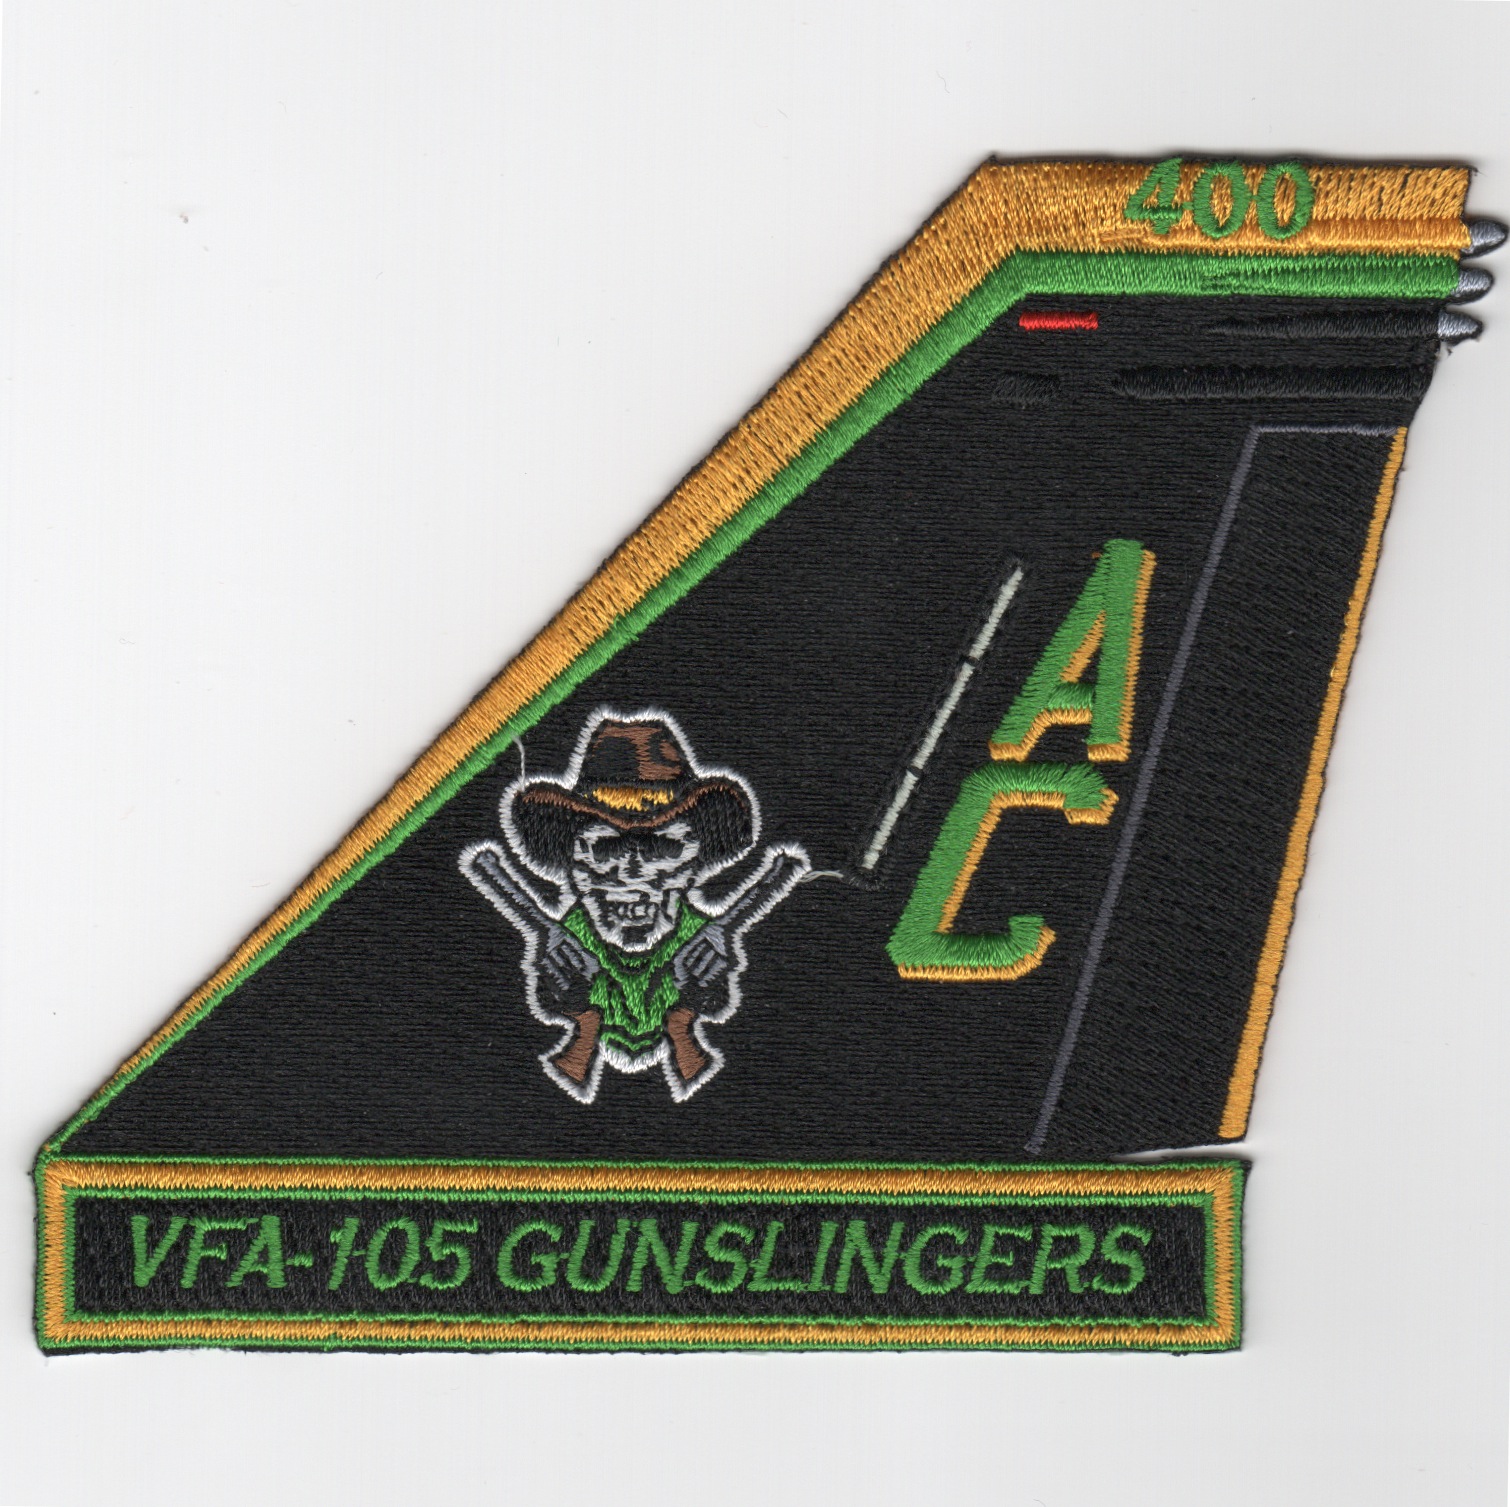 VFA-105 'Gunslingers' TAILFIN Patch